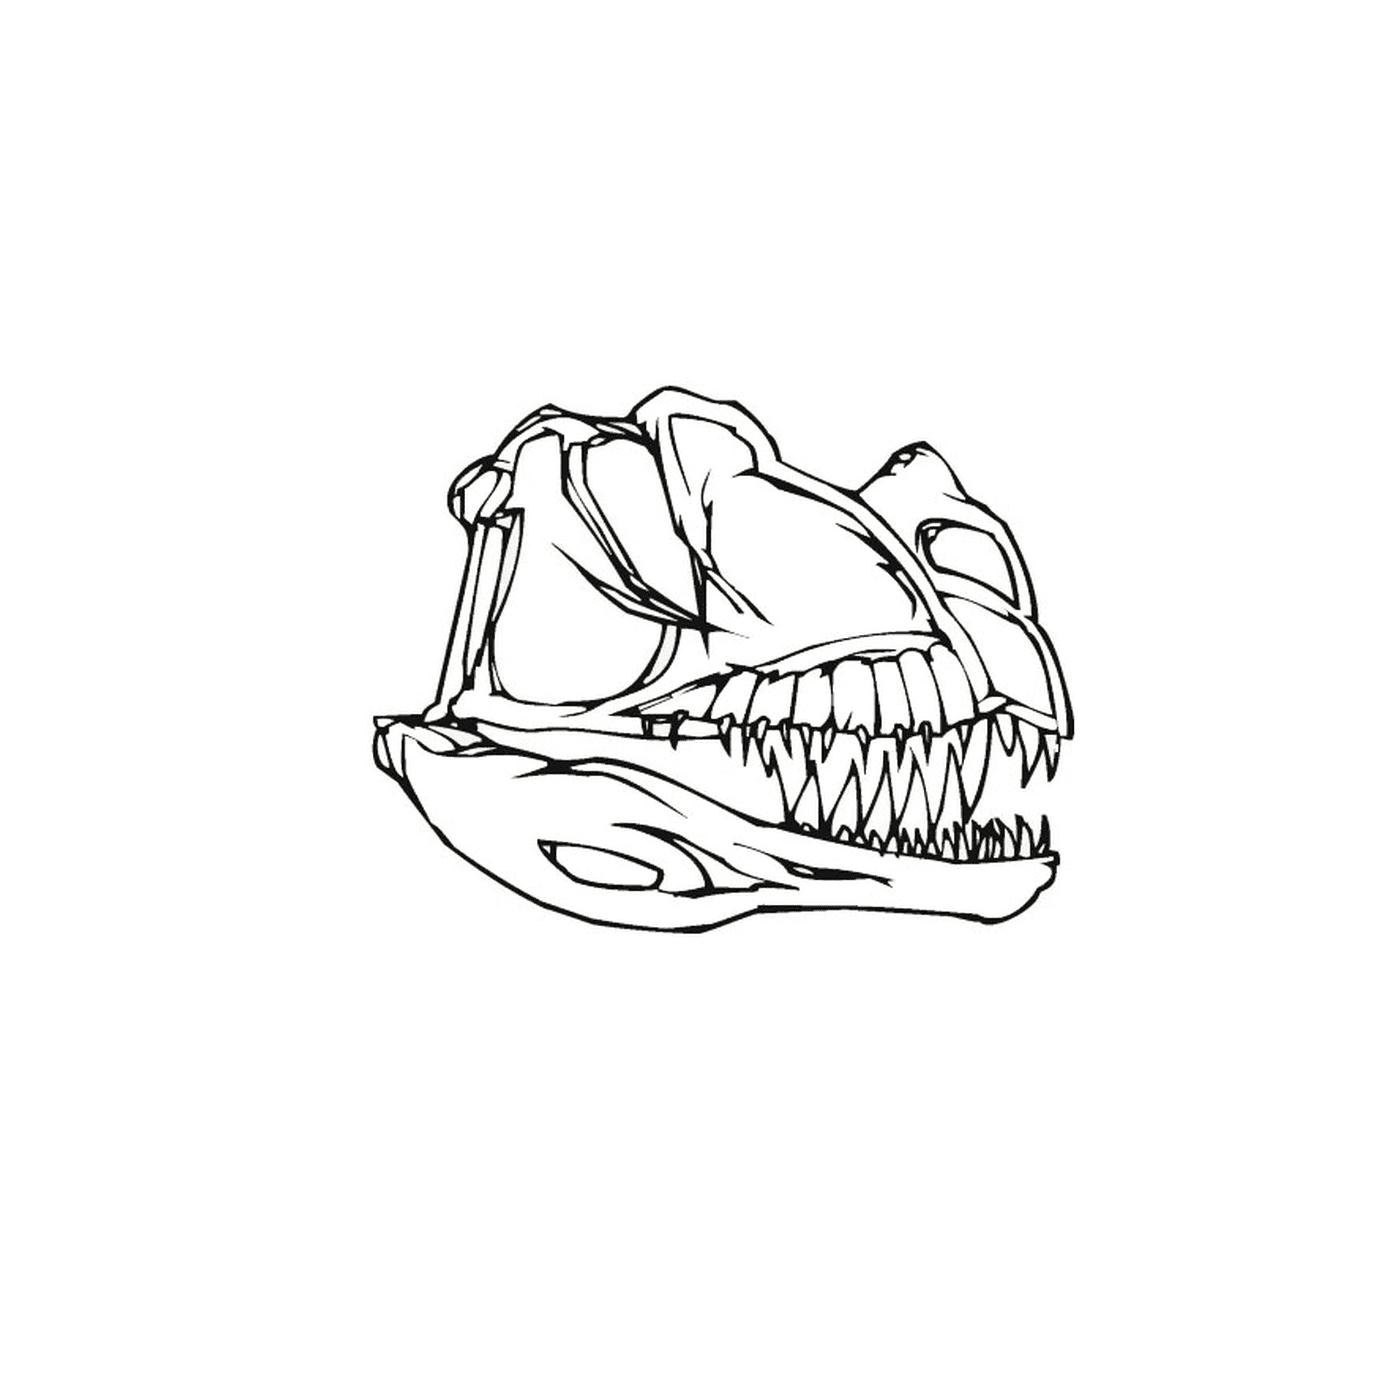  Череп динозавра с зубами 